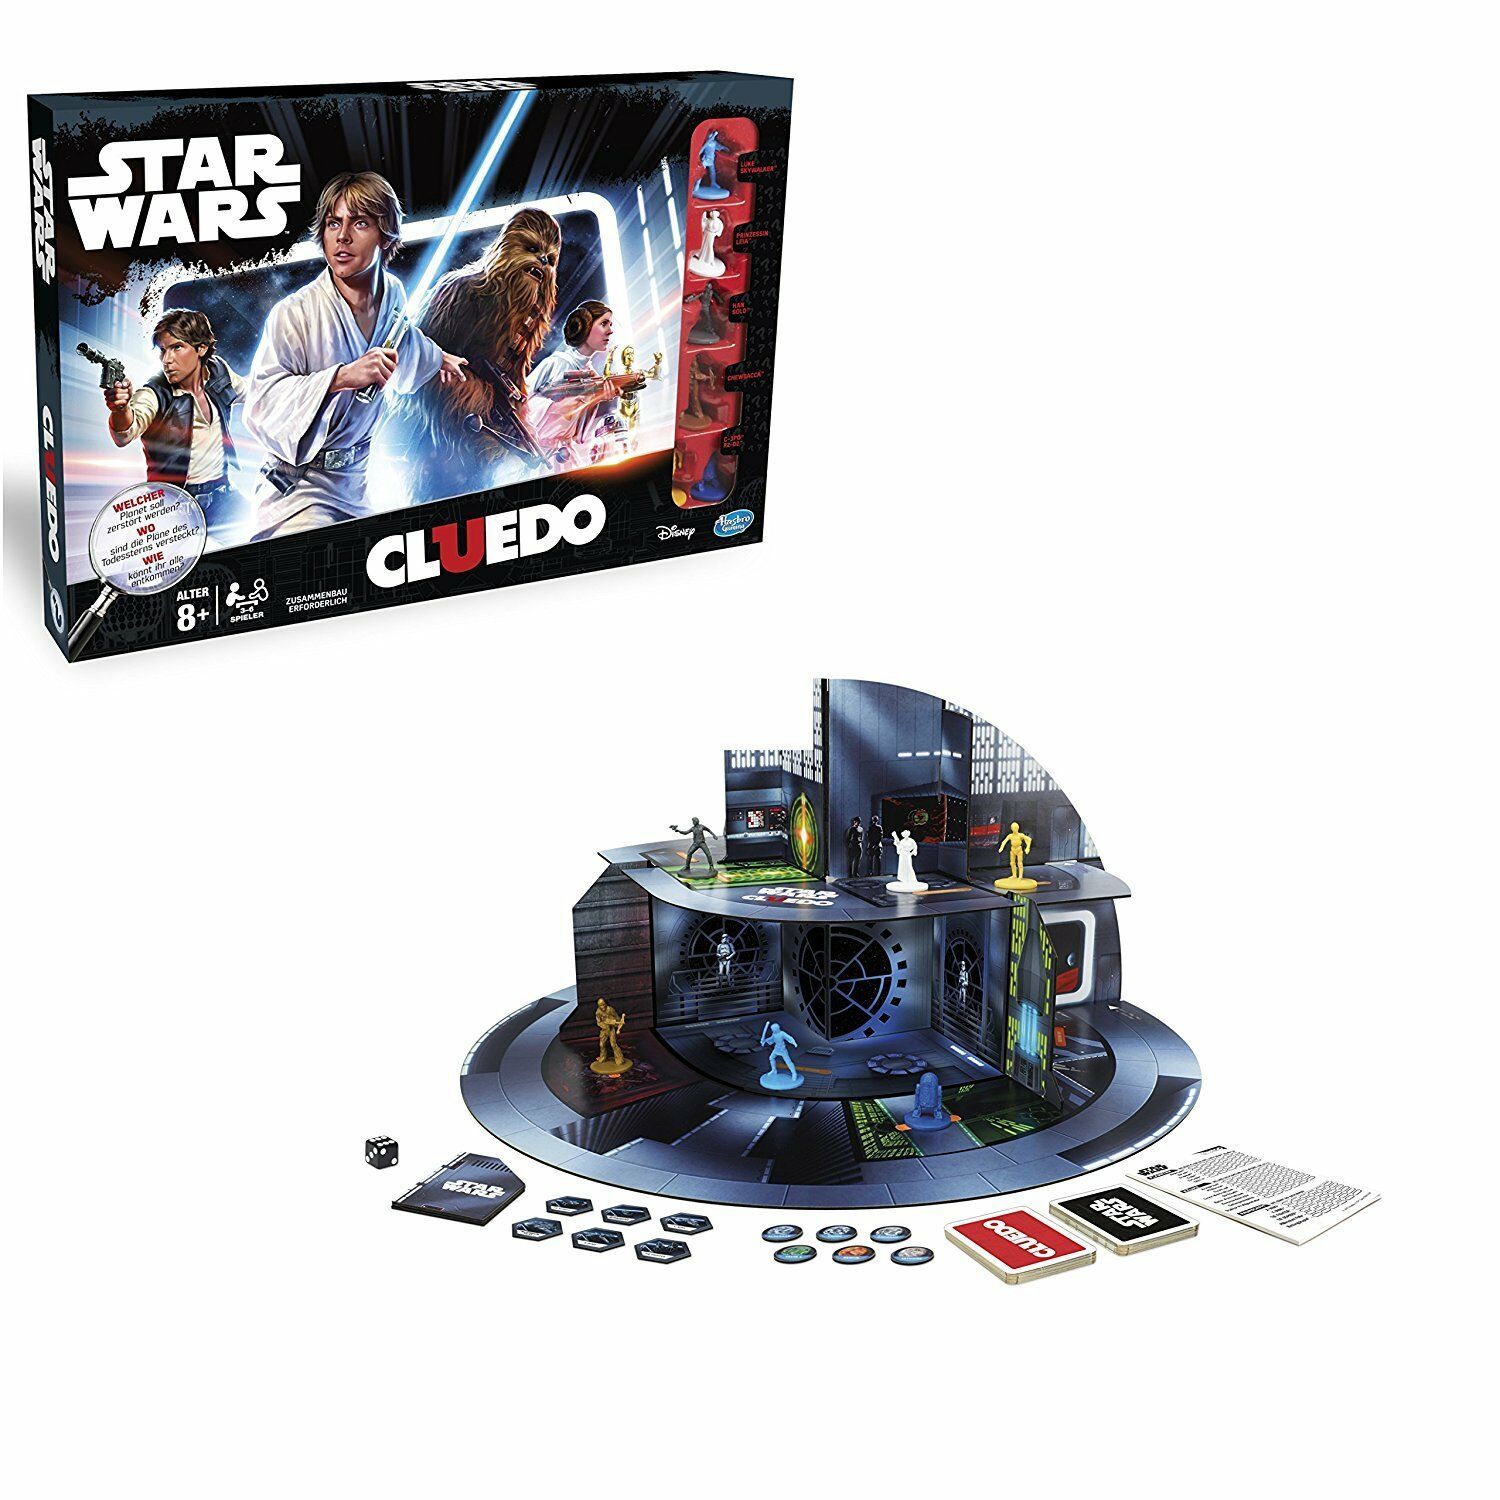 Star Wars Der Cluedo Hasbro Clue Game Edition Kinder Erwachsene Set D Rolle